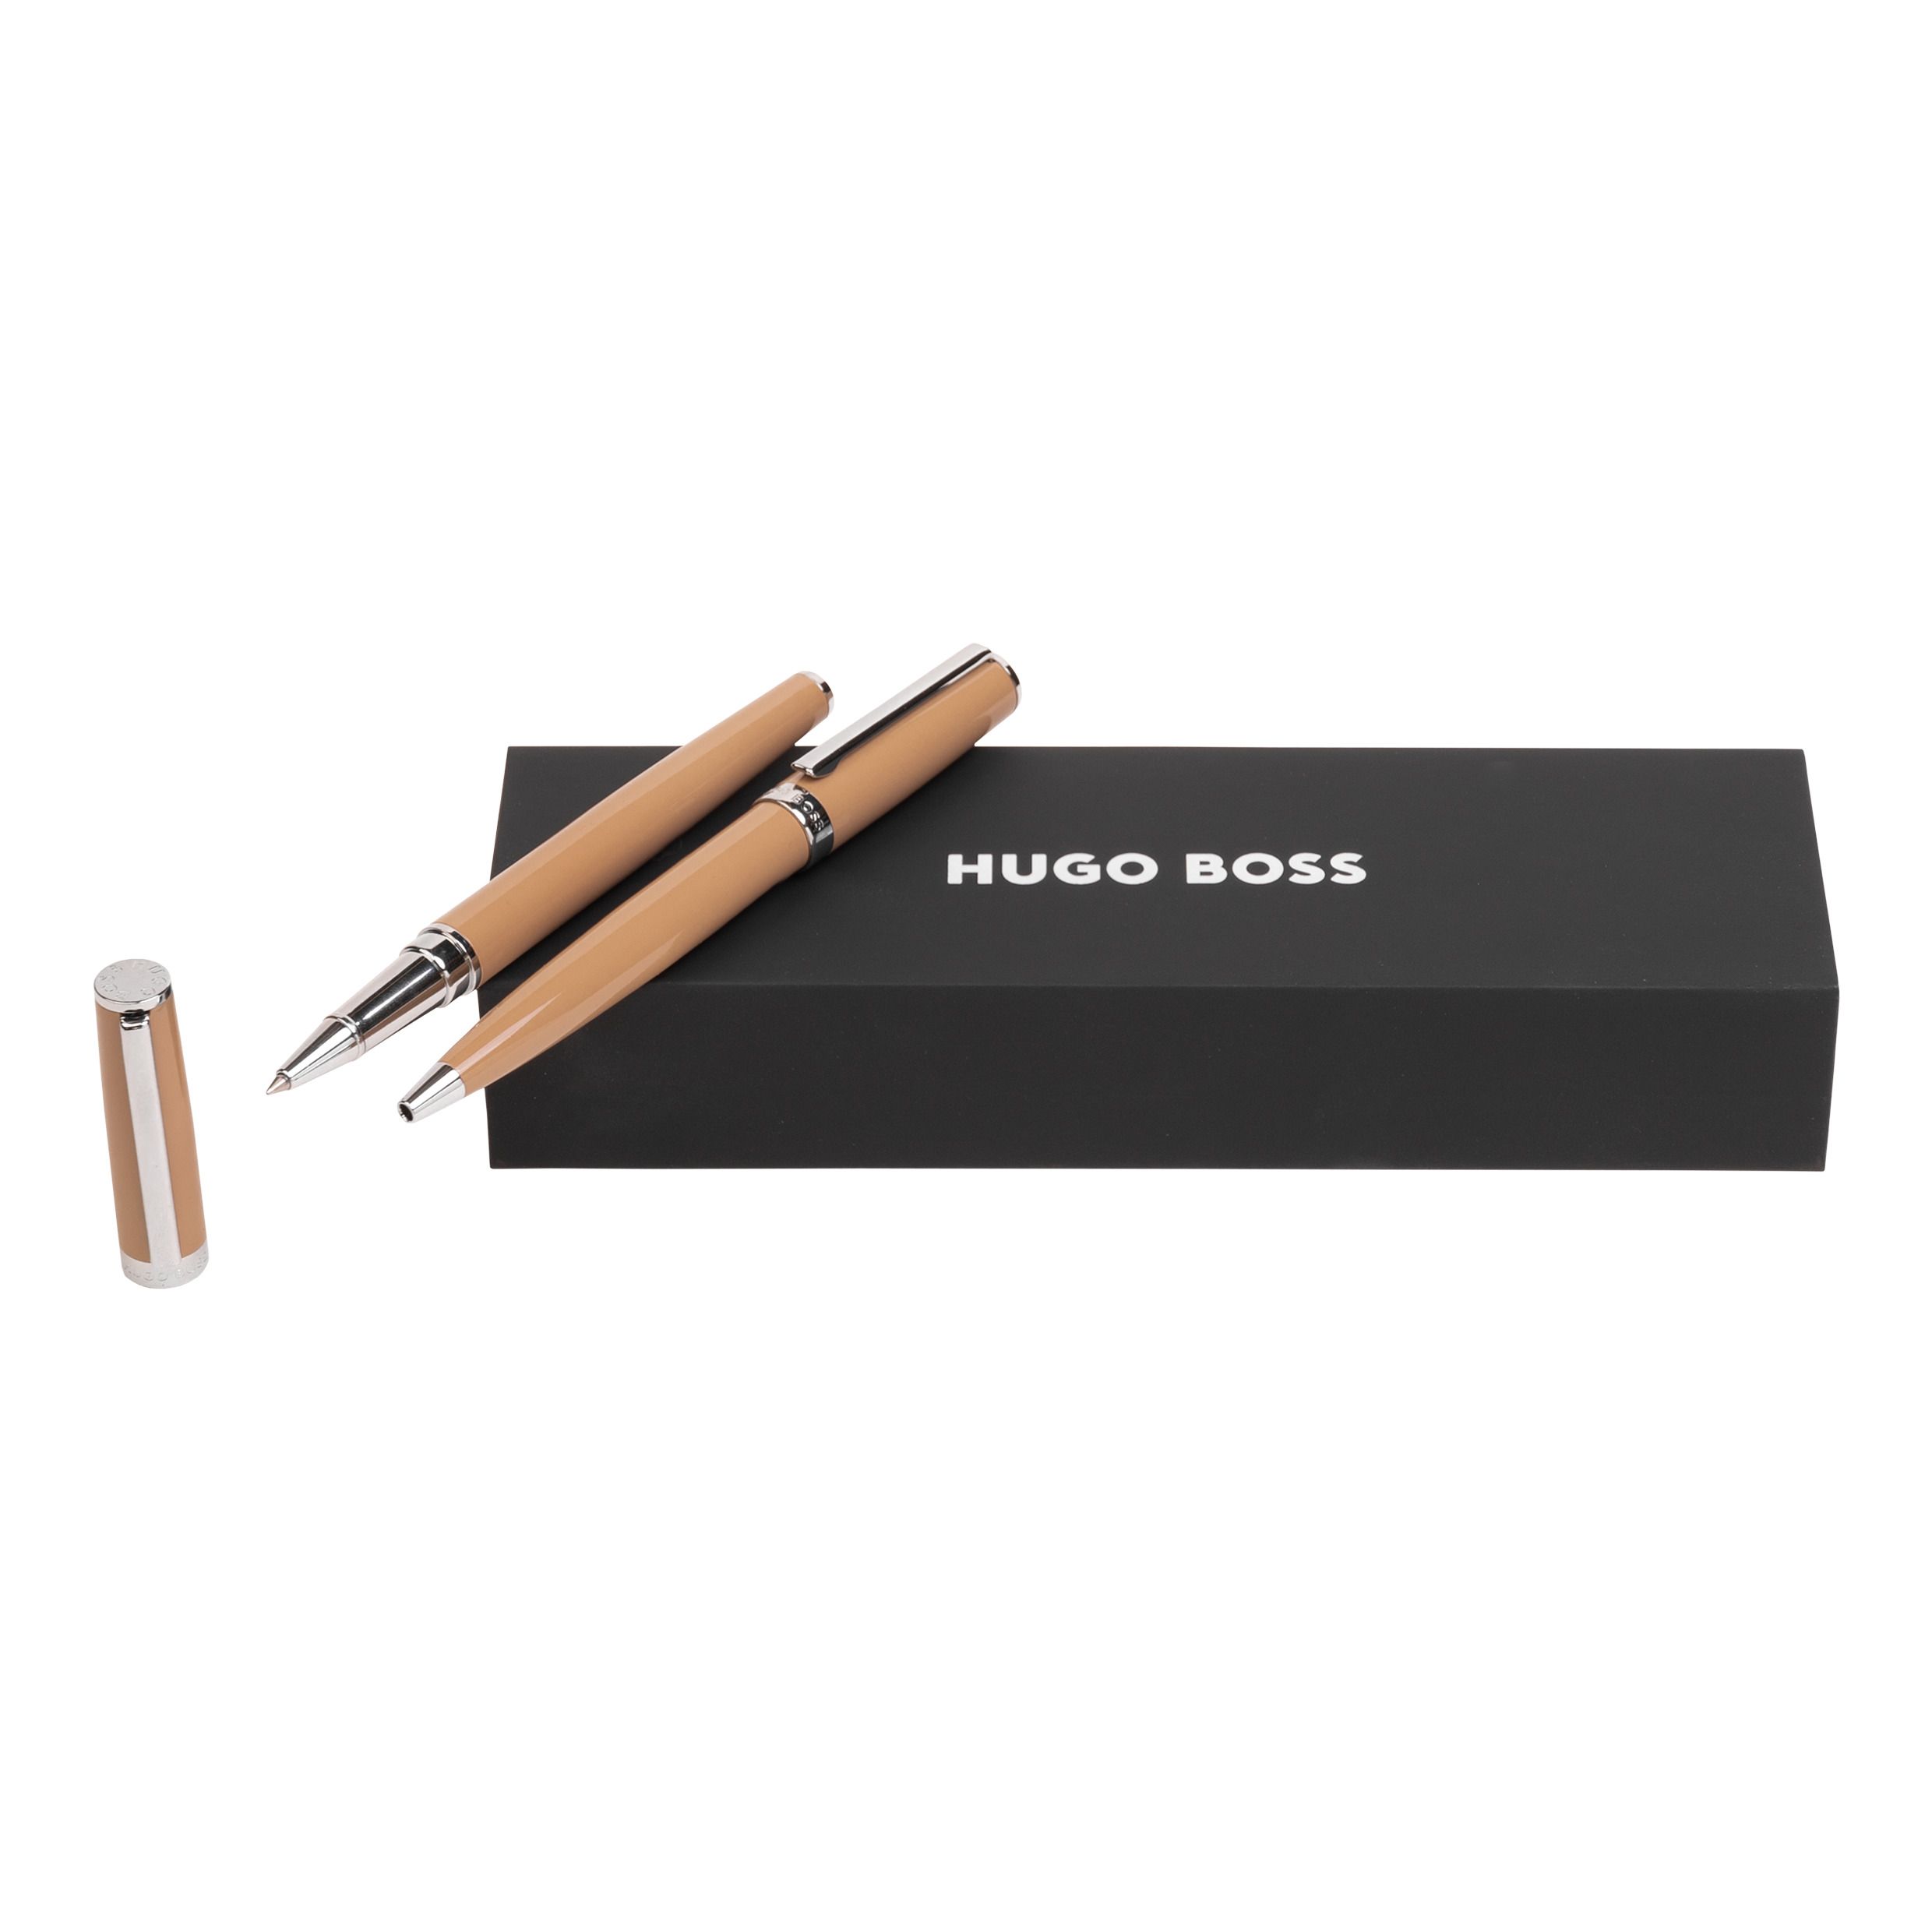 Zestaw upominkowy HUGO BOSS długopis i pióro kulkowe - HSN2544Z + HSN2545Z